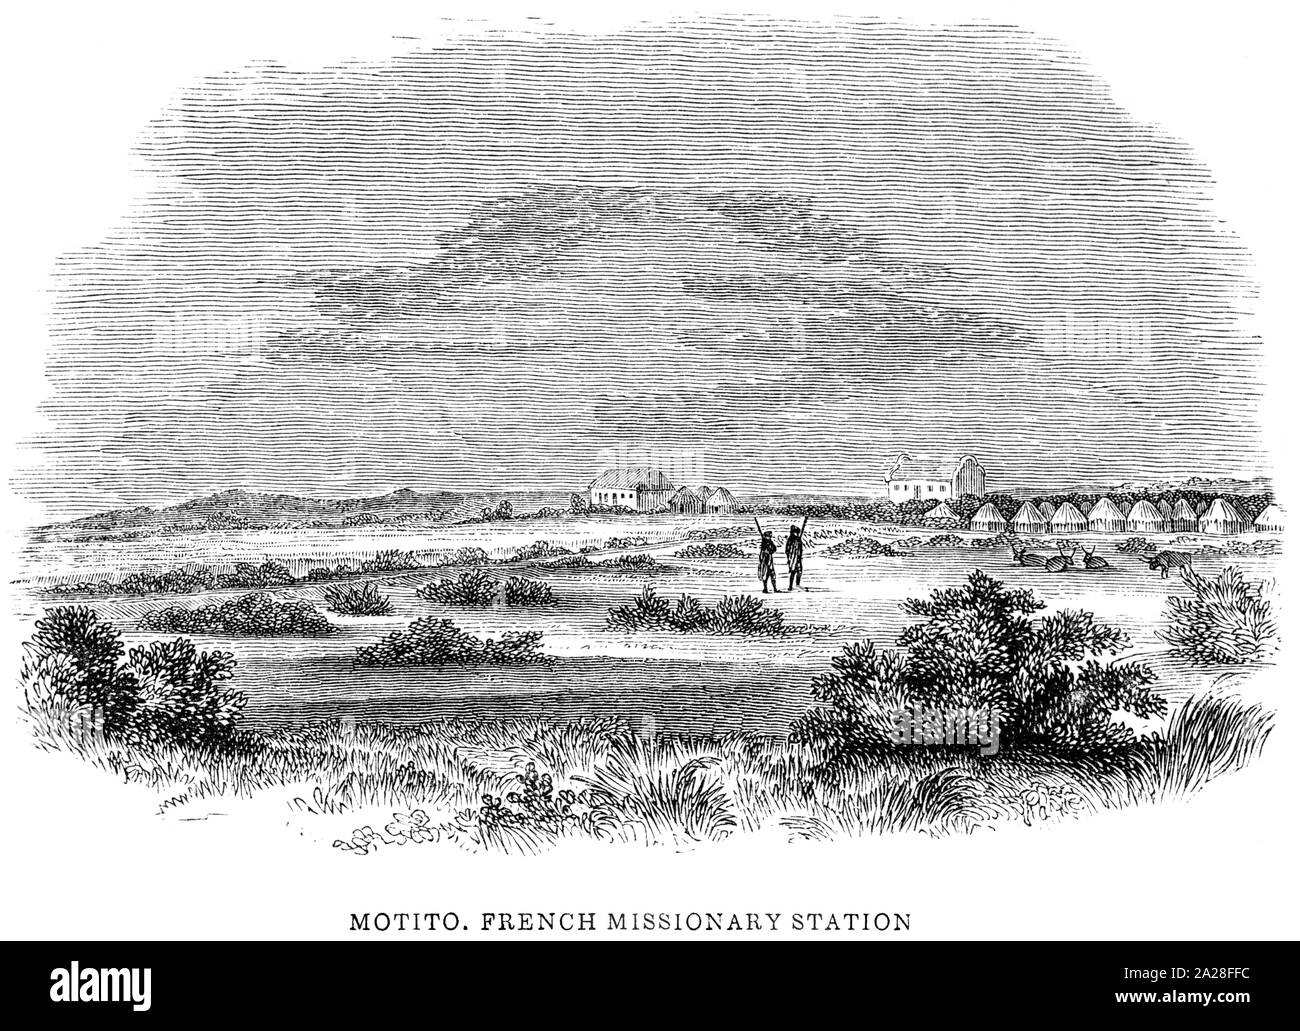 Eine Illustration von Motito, französischer Missionar in Südafrika gescannt und in hoher Auflösung aus einem Buch von Robert Moffat im Jahre 1842 gedruckt. Stockfoto